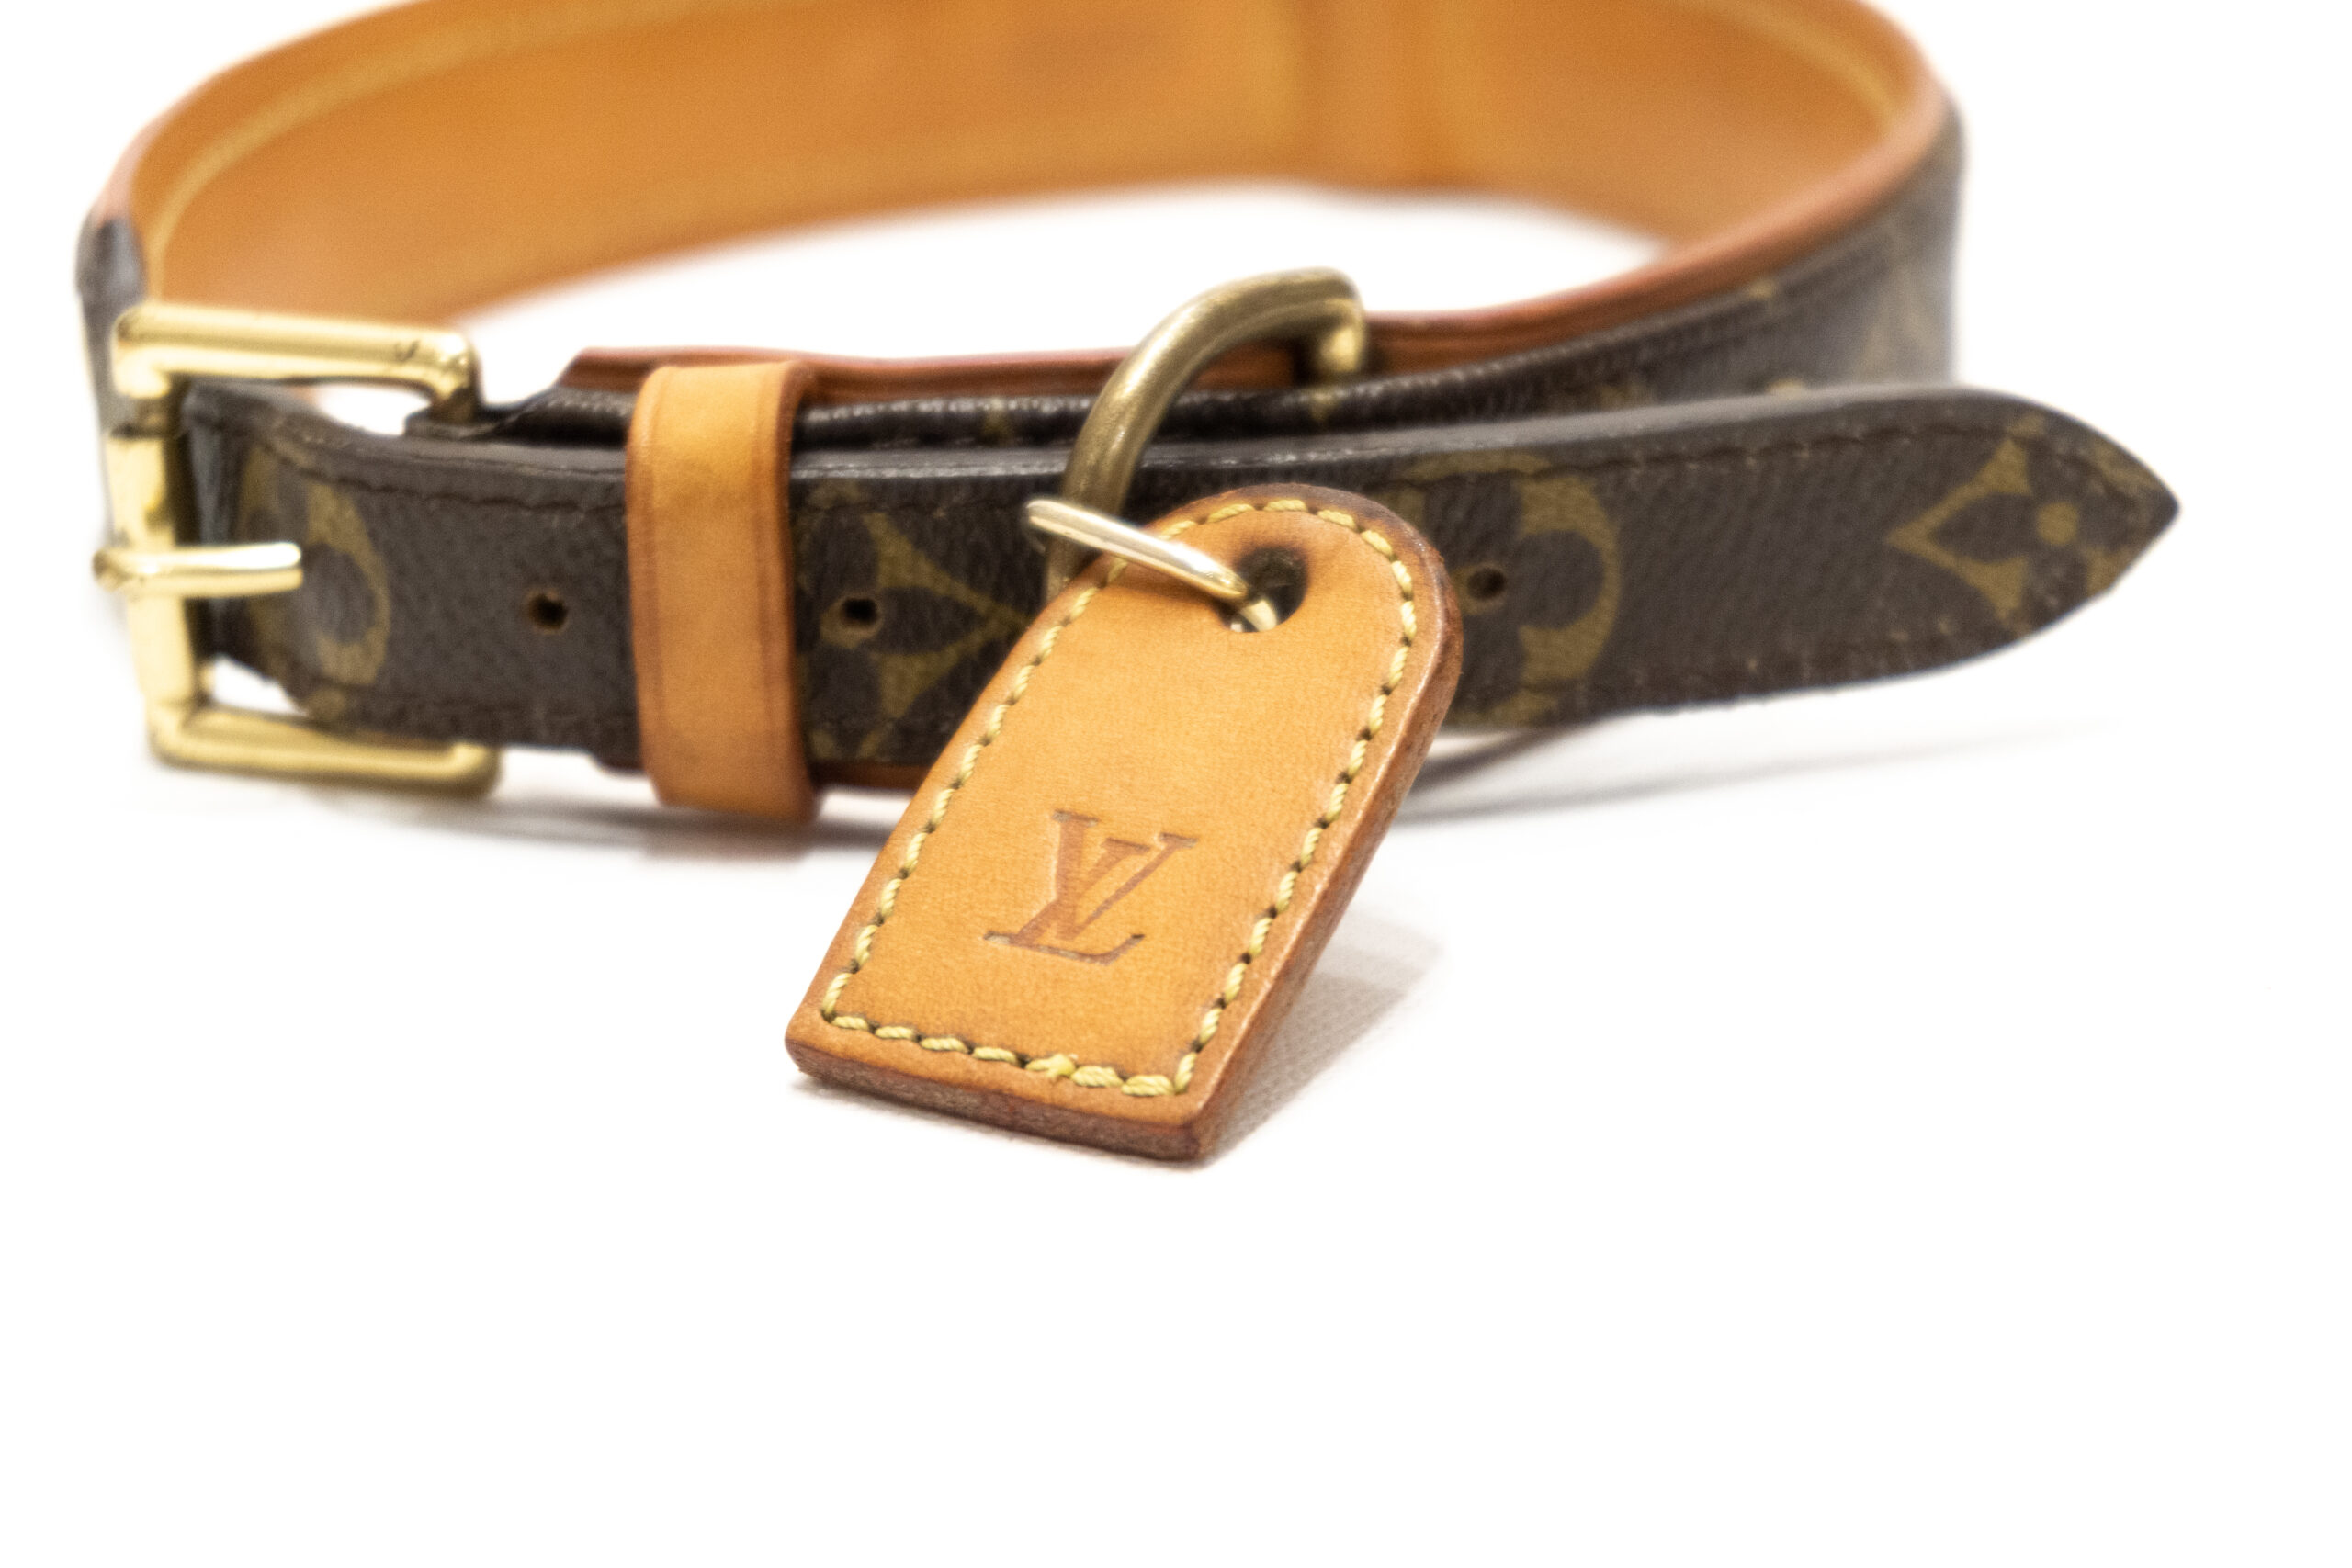 (verkauft) Louis Vuitton Hundehalsband